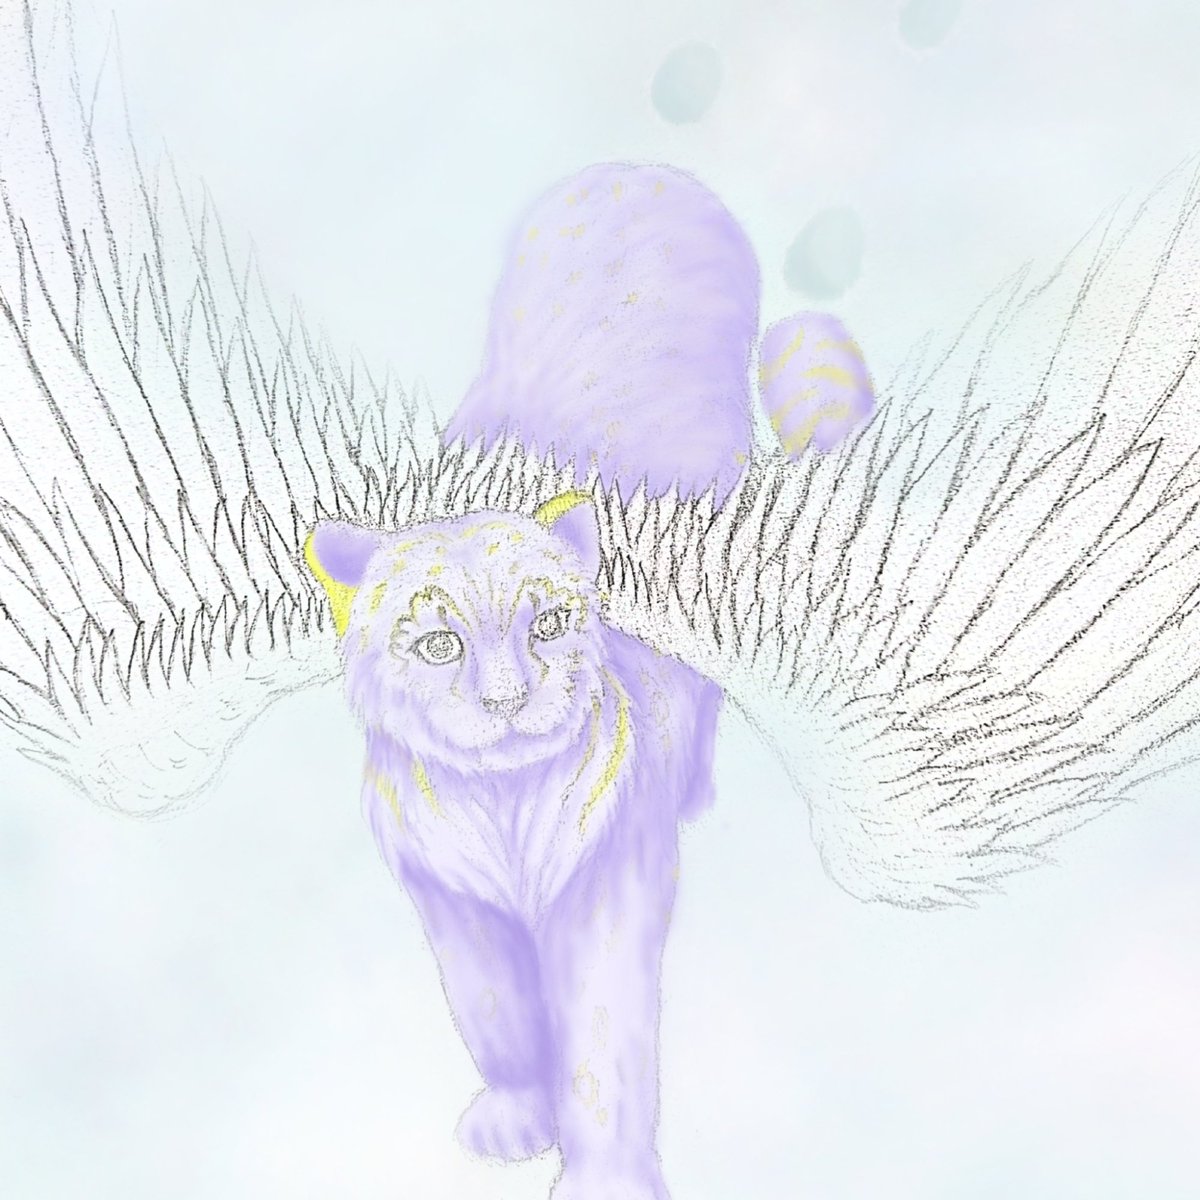 ☆Snow Leopard Angel☆
ユキヒョウを元に描いた創作動物です！
ユキヒョウに翼つけました！！
#動物画
#animalart
#猫科動物
#絵描き